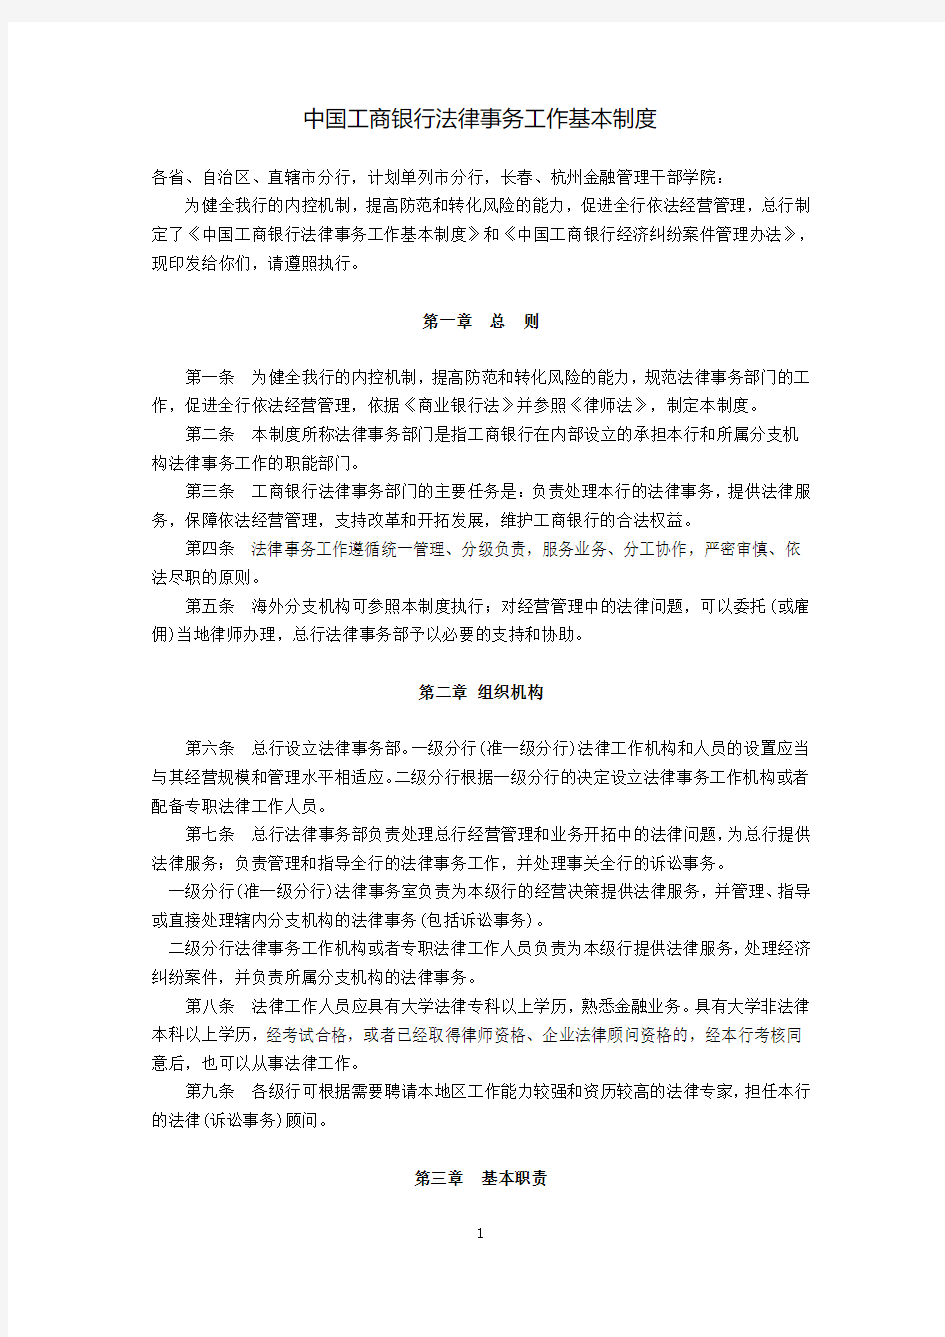 中国工商银行法律事务工作基本制度